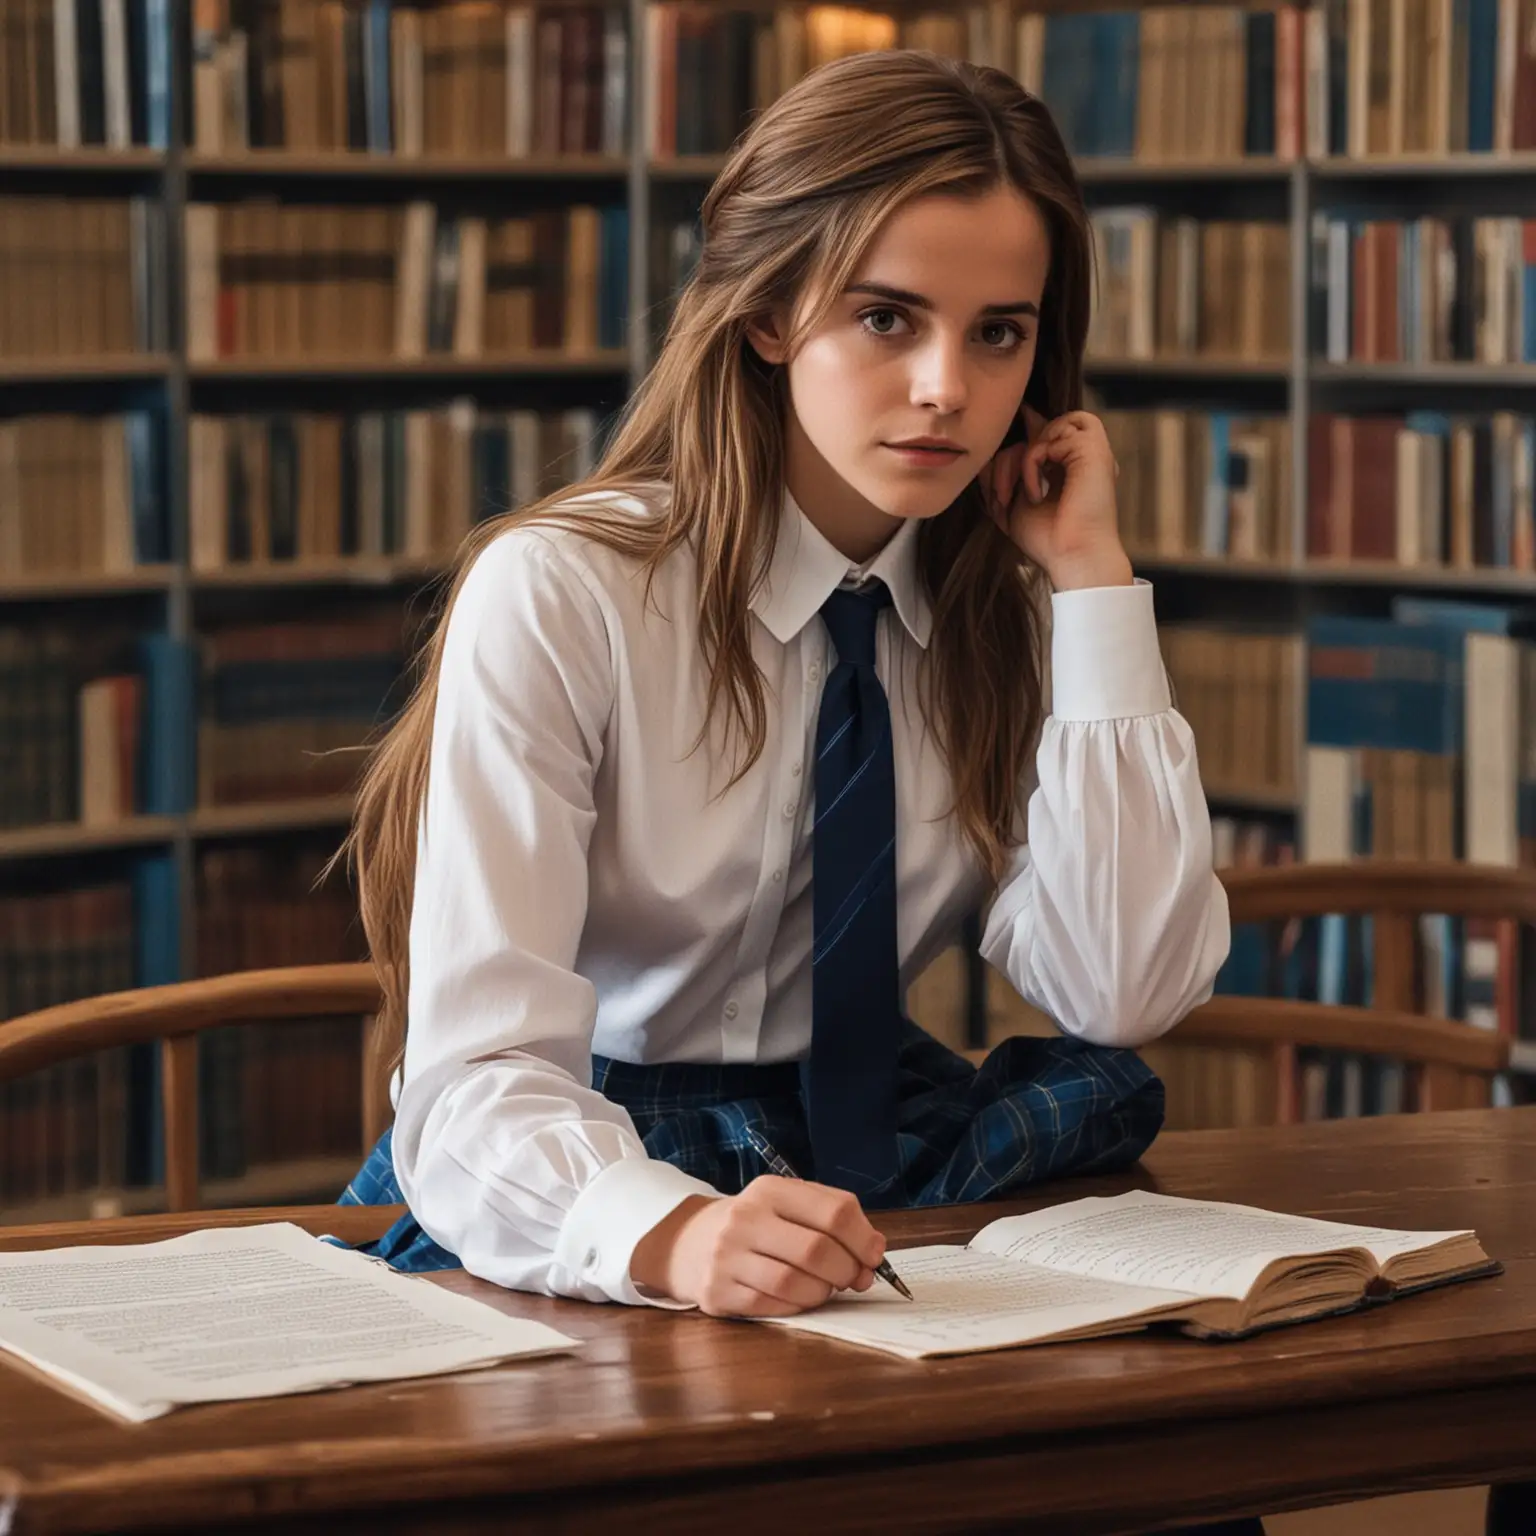 dans bibliothèque, assise à une table Emma Watson cheveux très long, songeuse, chemise blanche polyester manches longues et cravate bleu et jupe courte plissée bleu roy à carreaux bleu foncé et moccasins noir ecrit une love letter